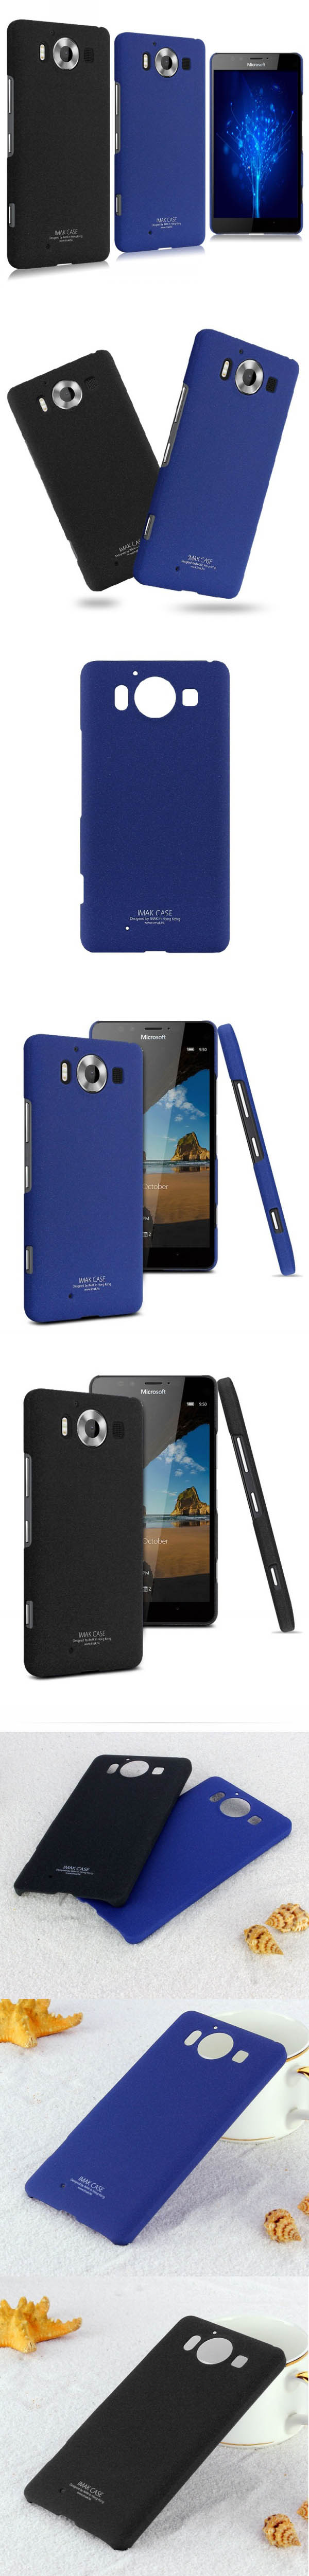 Ốp lưng Lumia 950 imak Cowboy vân cát 3